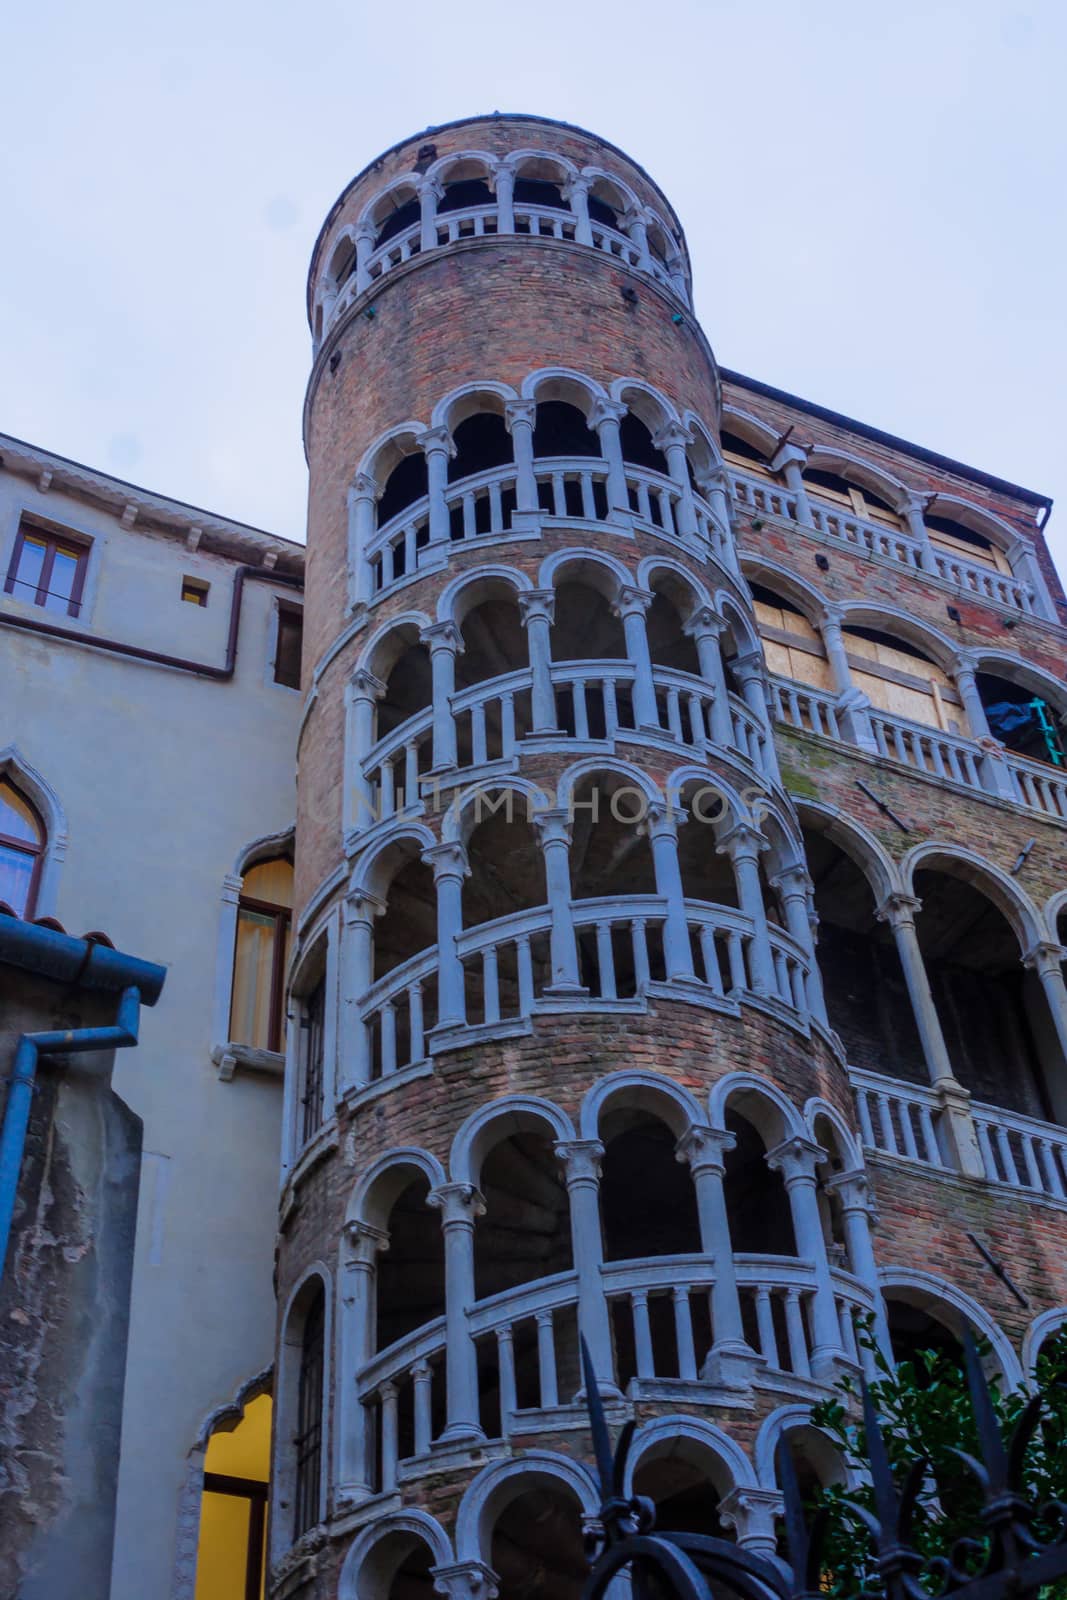 The Palazzo Contarini del Bovolo, in Venice, Veneto, Italy